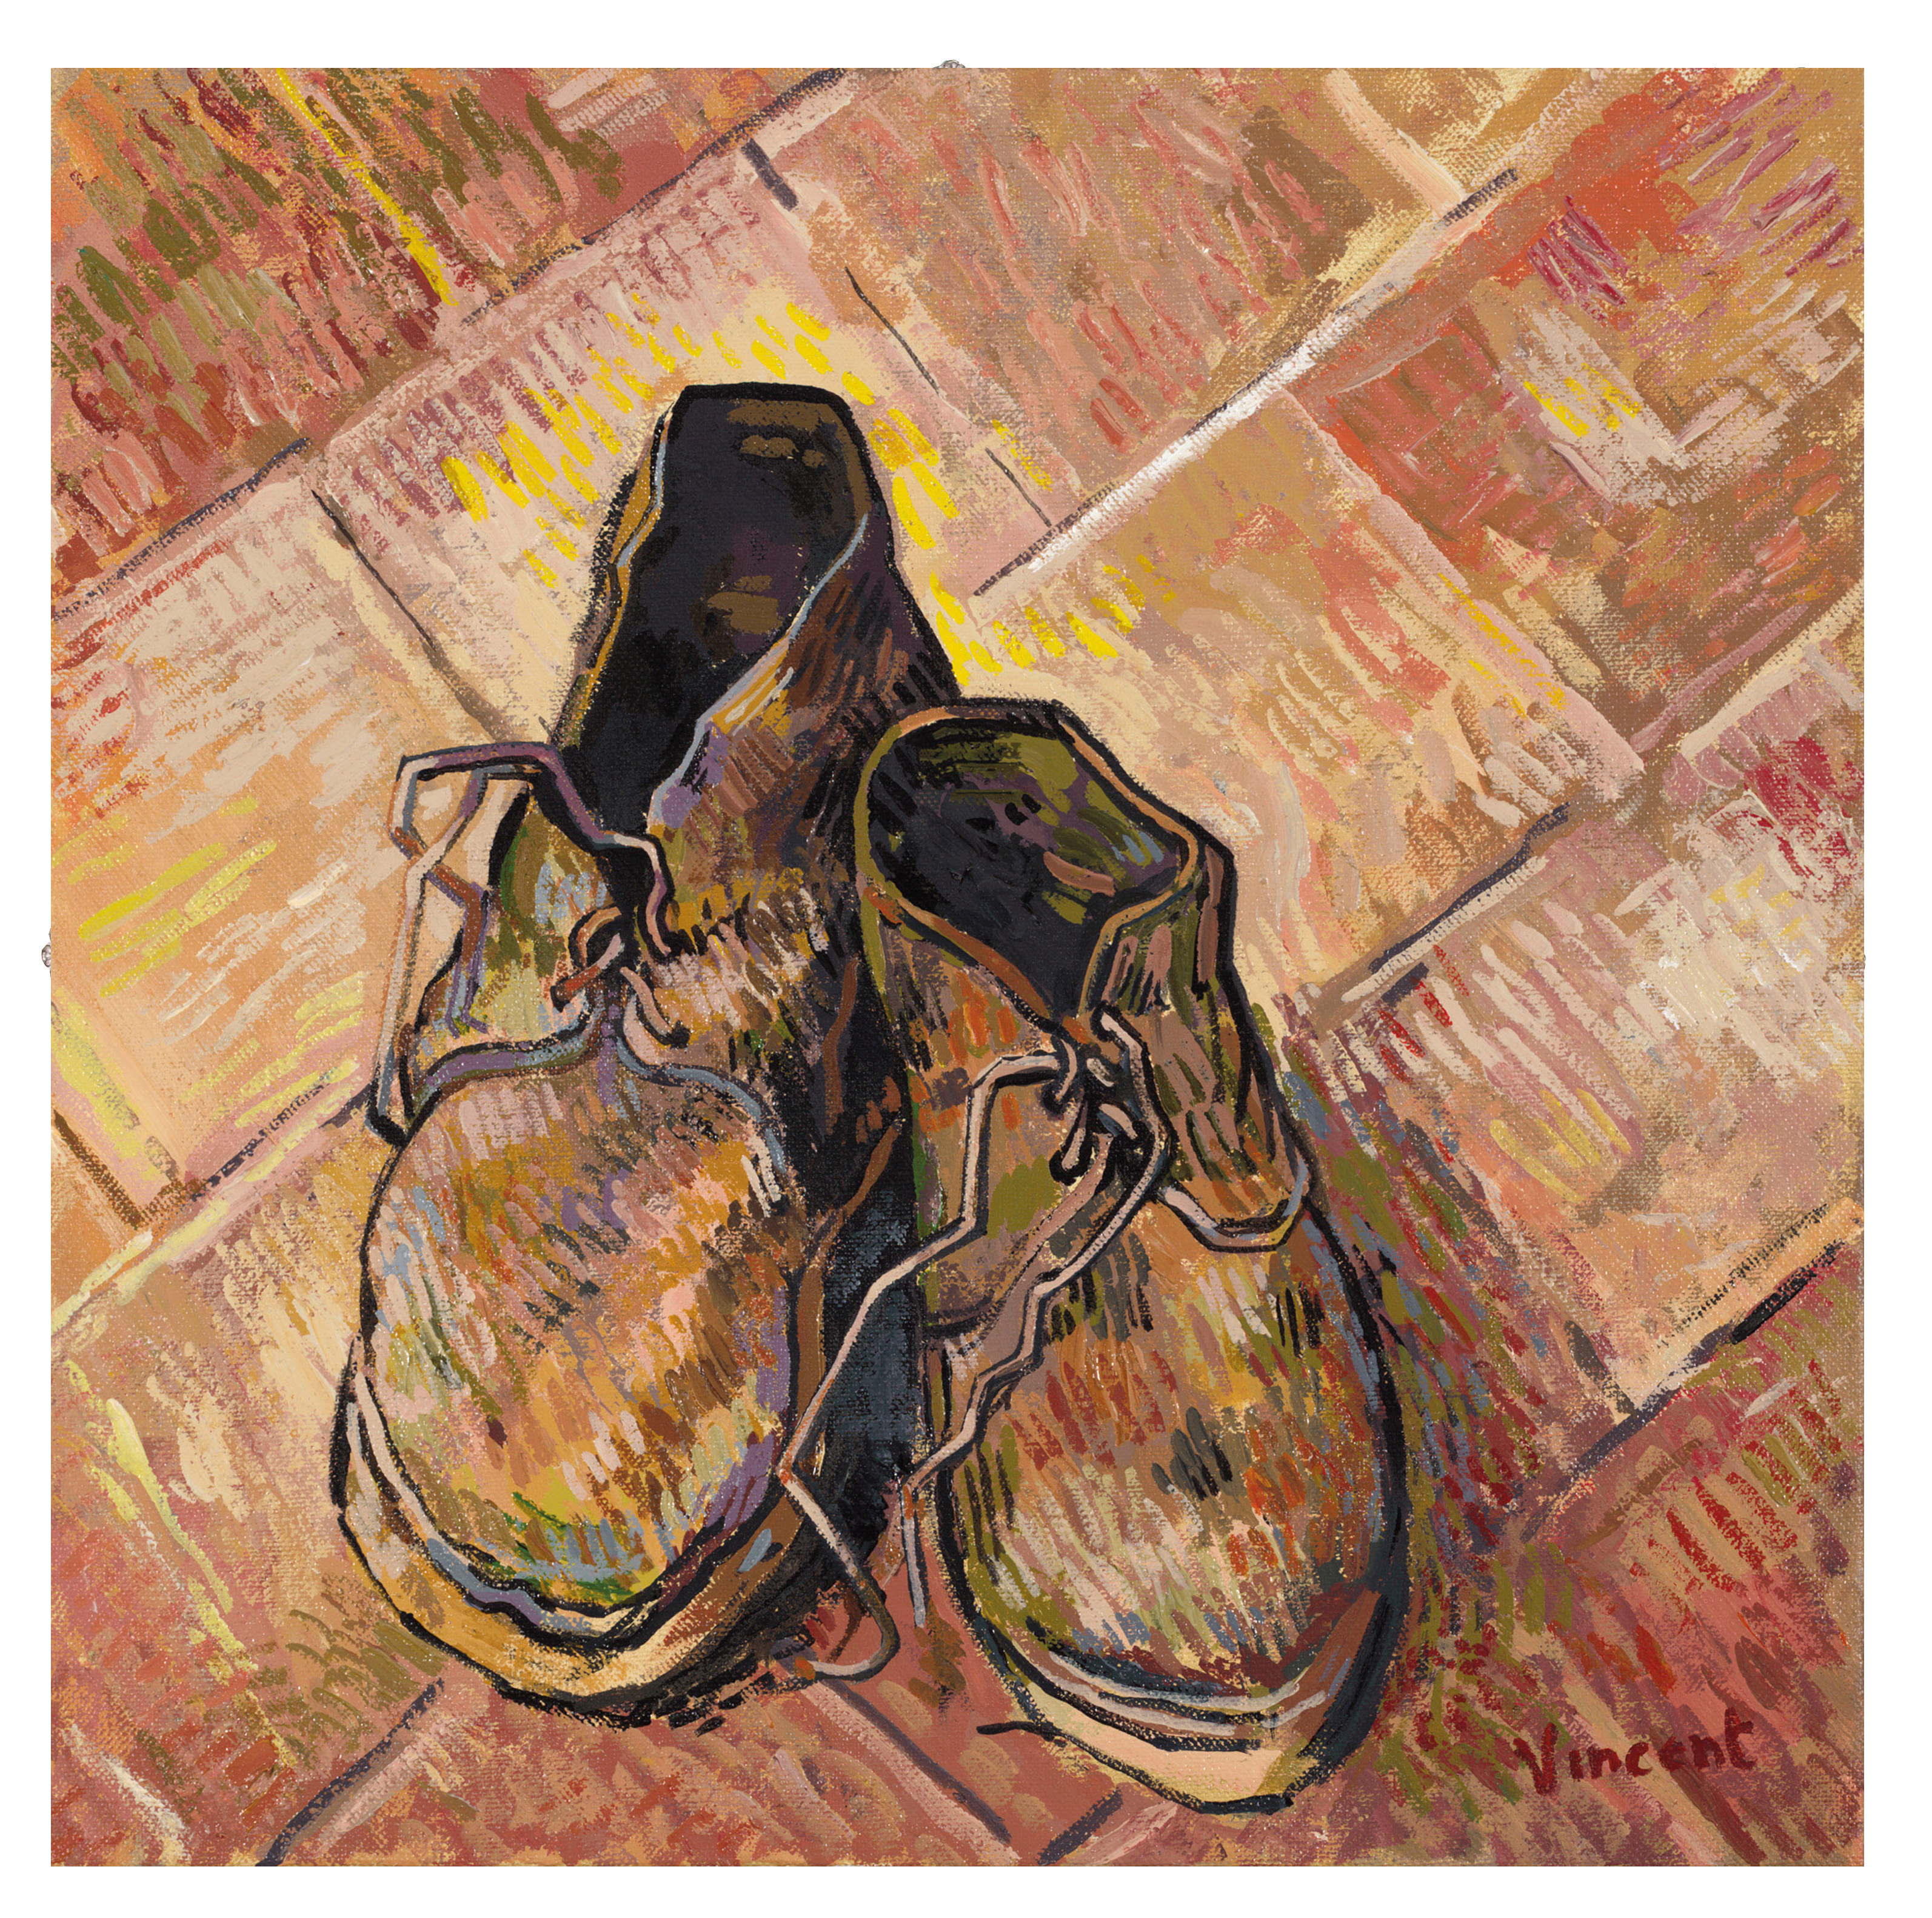 Картина ван гога ботинки